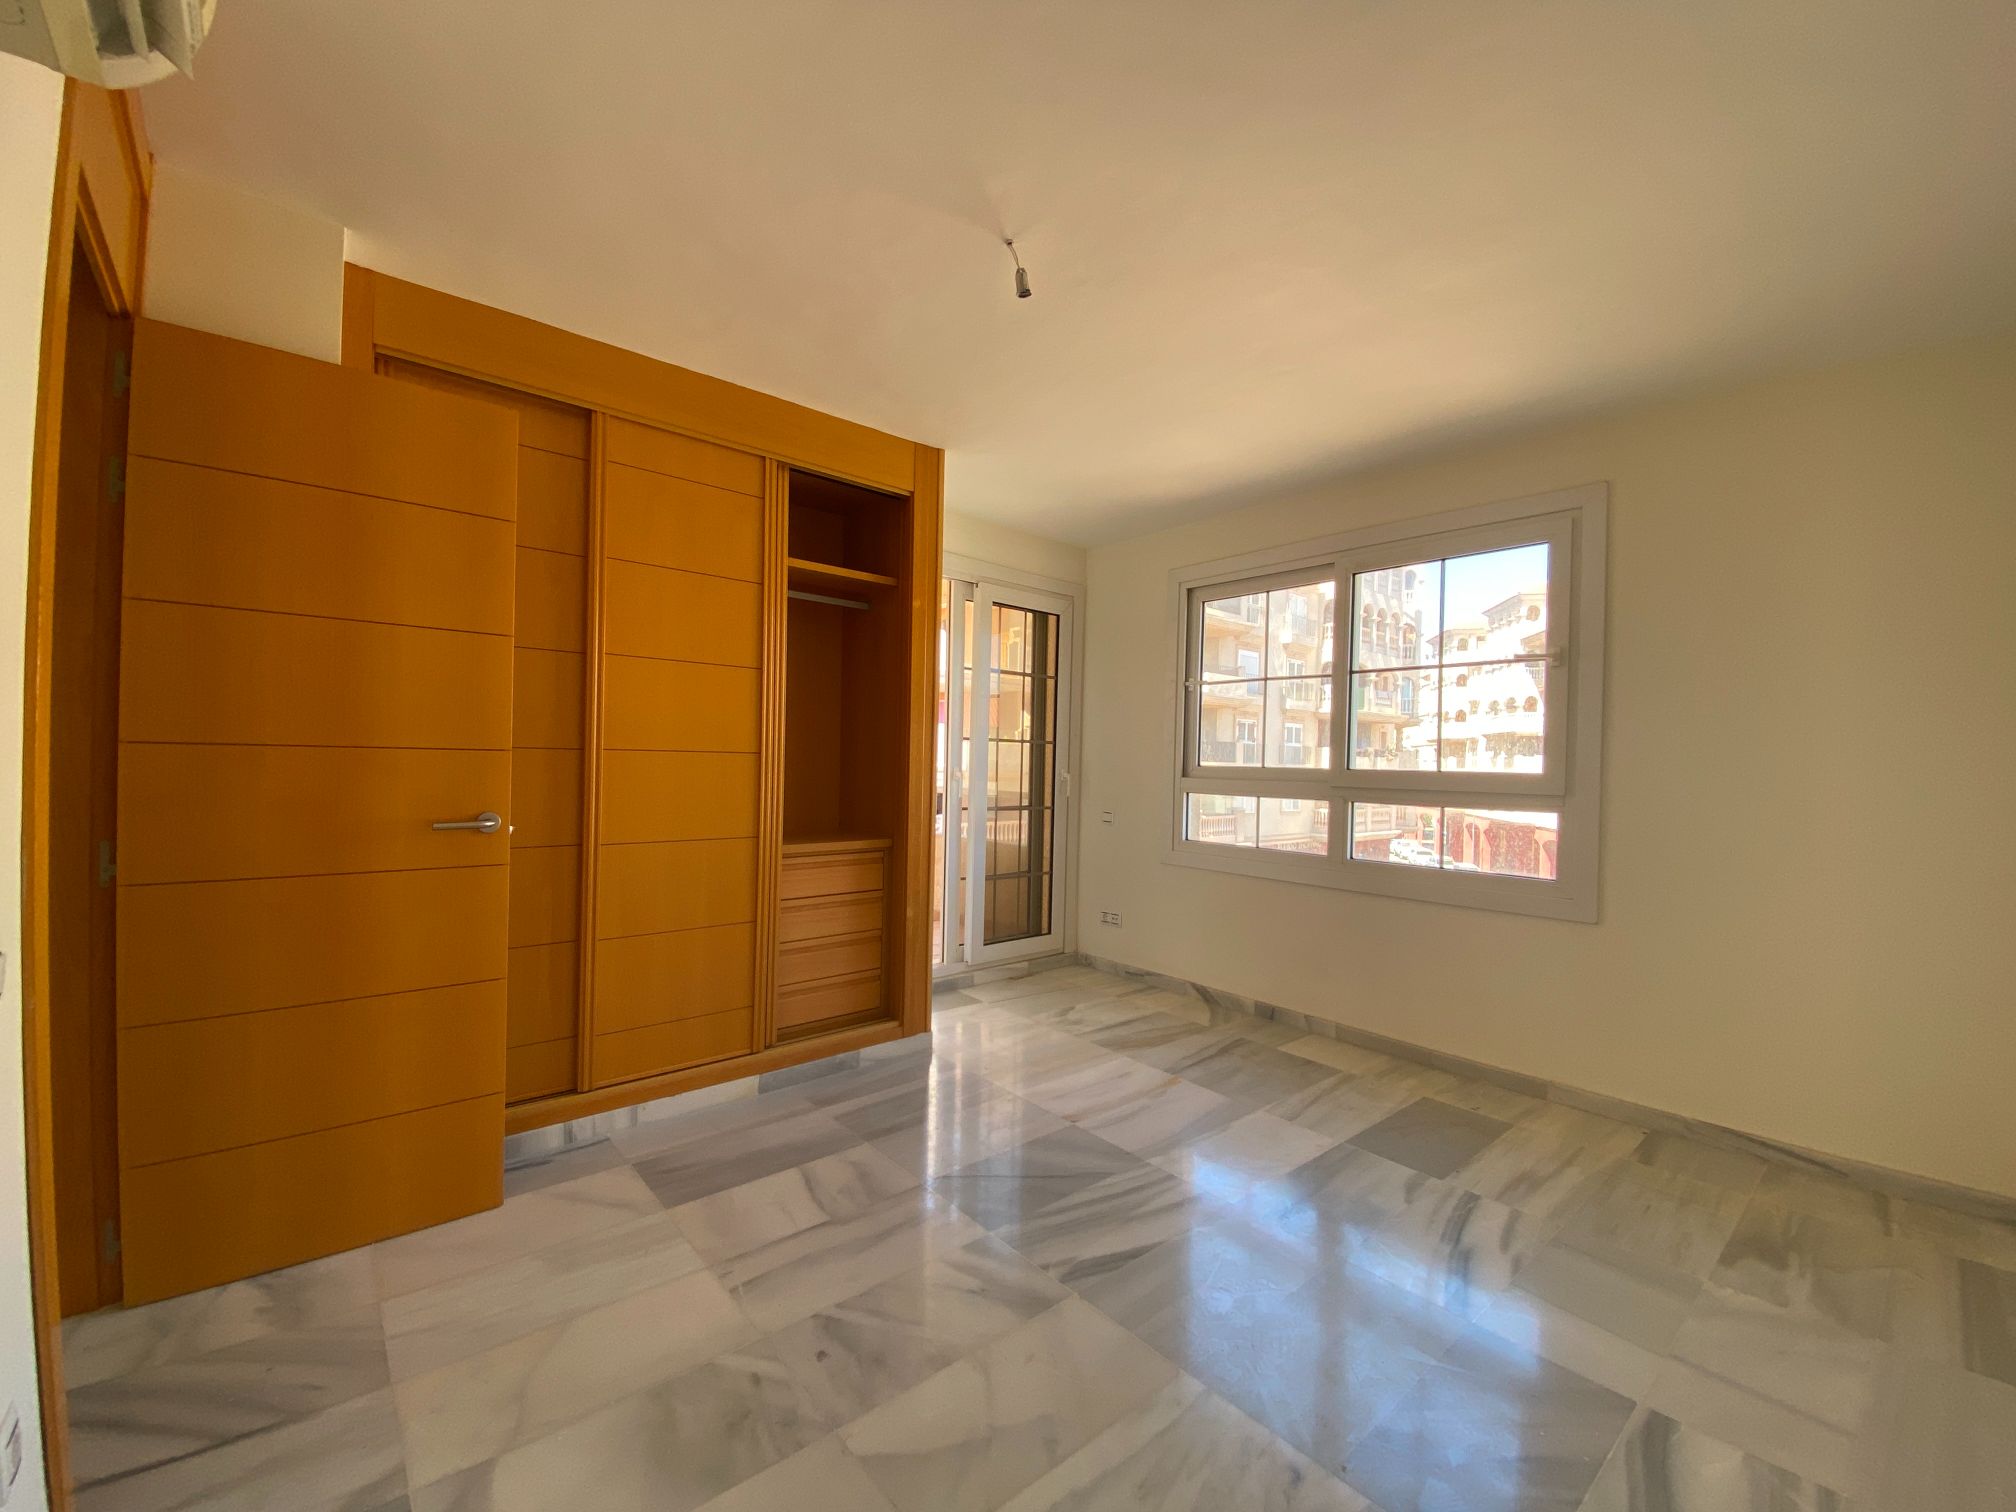 Apartment for sale in Almerimar and El Ejido 32